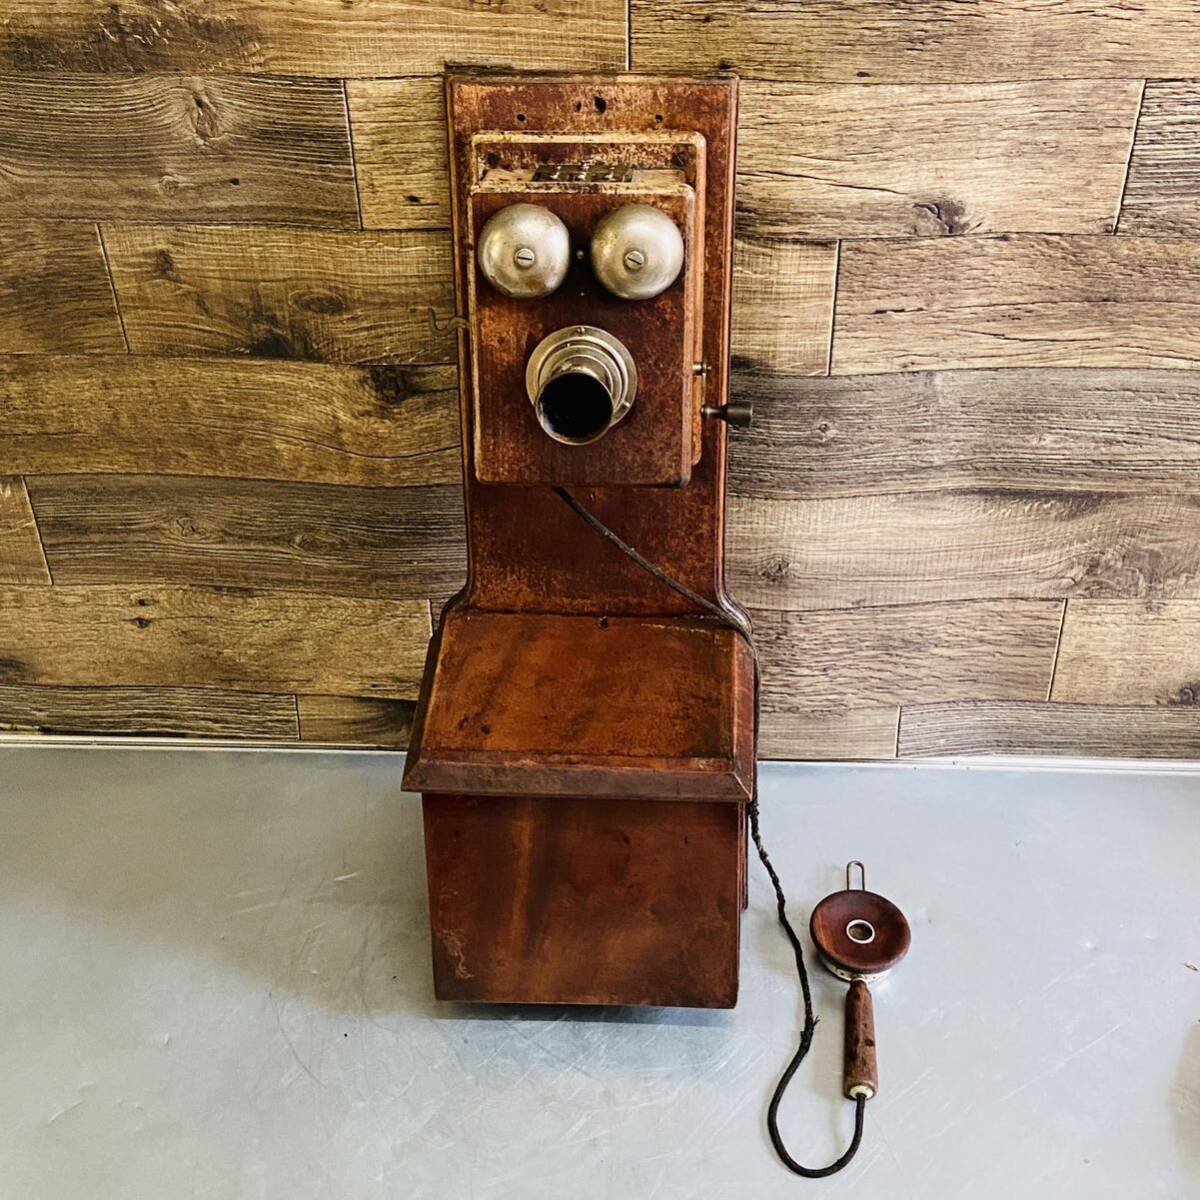  Showa Retro NEC Япония электро- доверие телефон . фирма Dell vi ru телефонный аппарат 1955 год орнамент телефонный аппарат из дерева панель вращение bell античный Vintage 